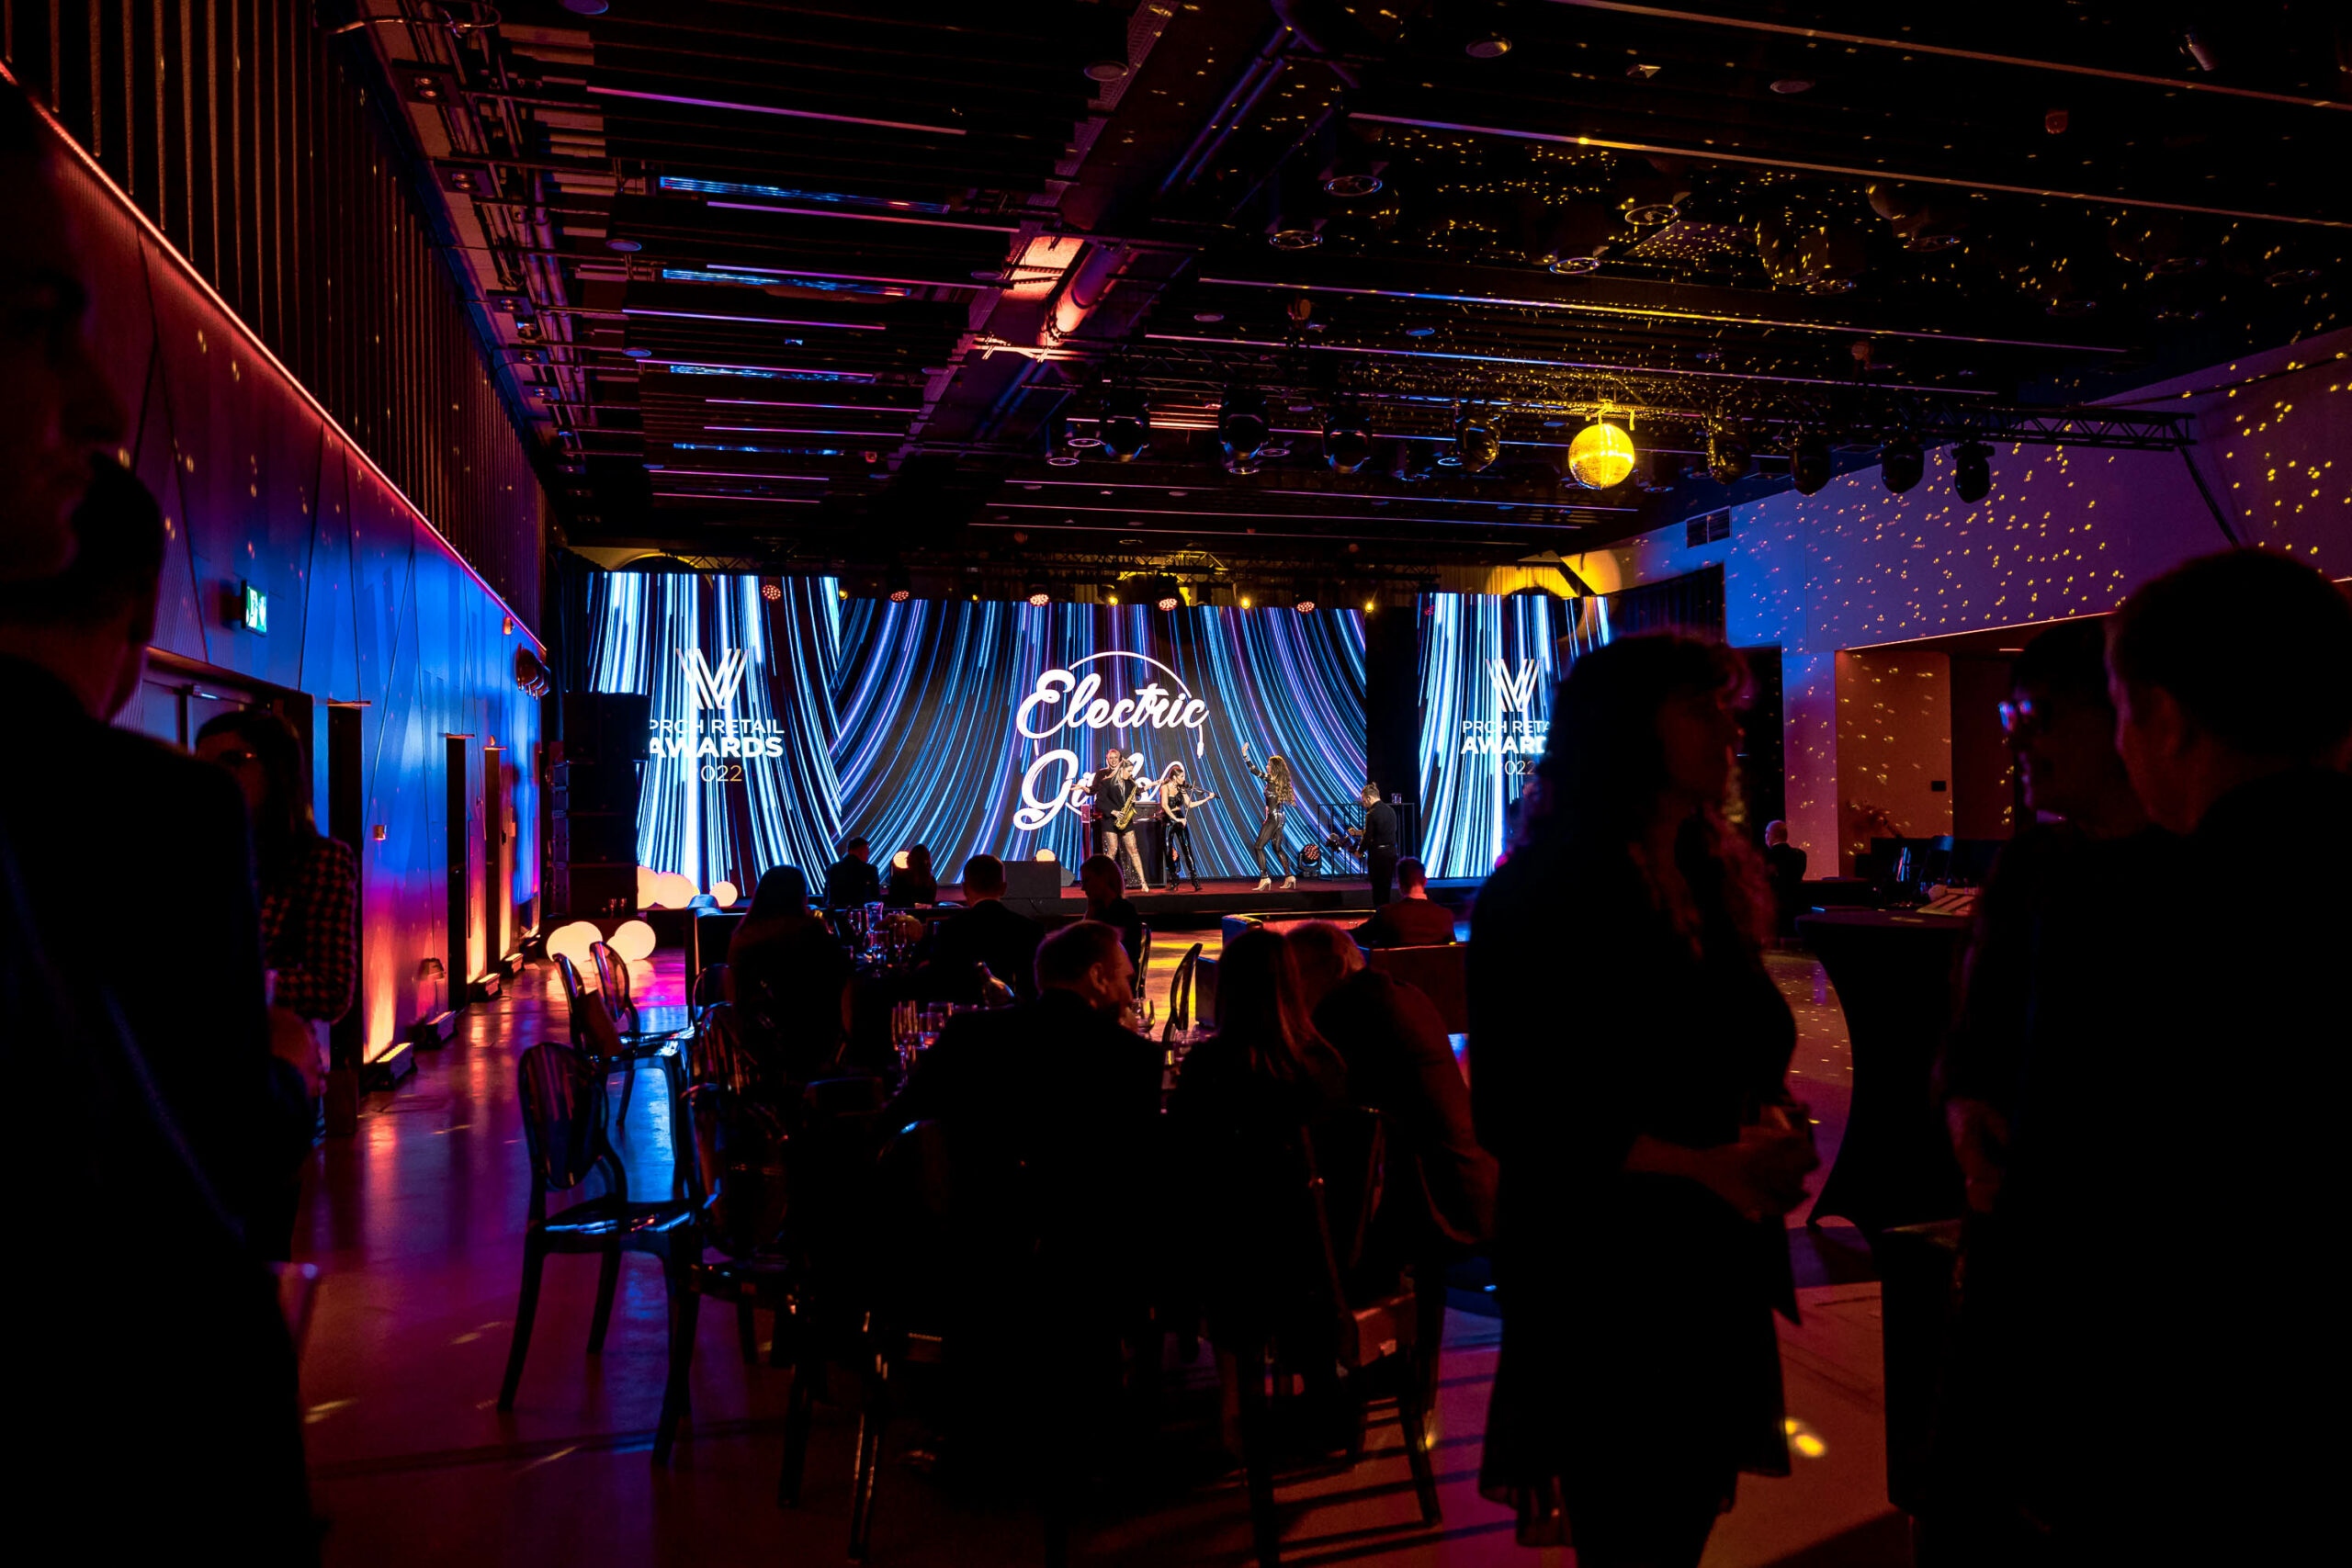 Instalacja sceniczna z transparentnych ekranów ledlight i klasycznych nośników LED podczas XIII edycji konkursu PRCH Retail Awards